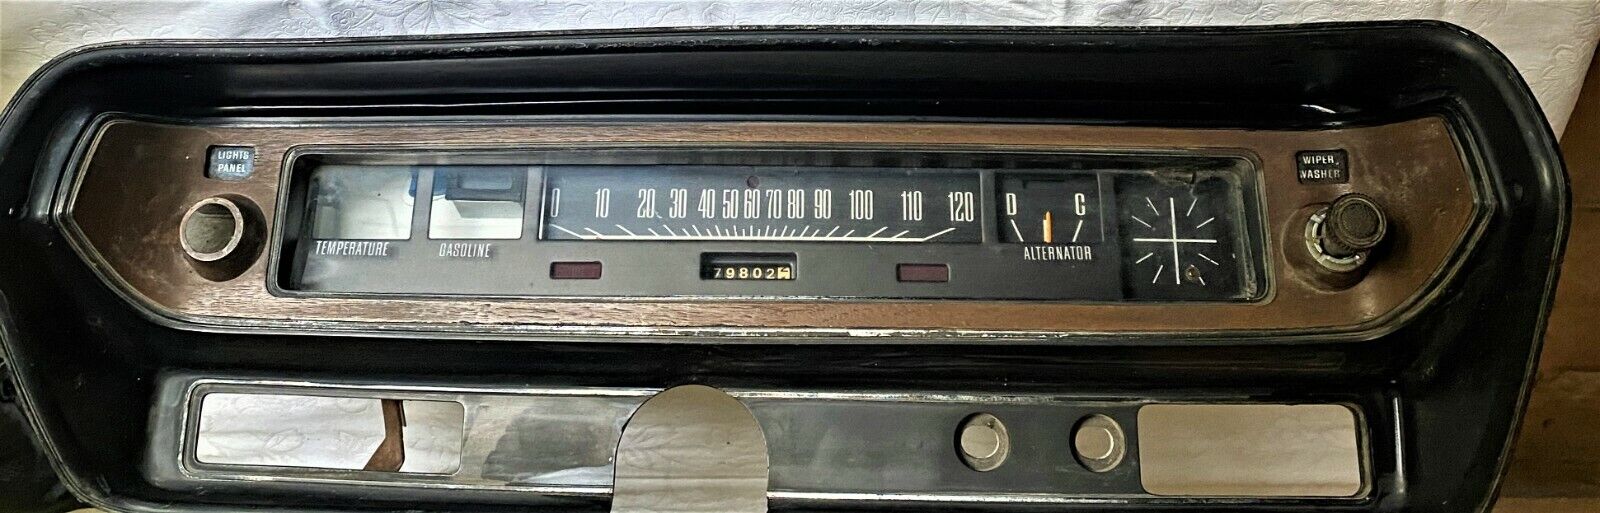  Sale  used  1971-74 Dodge Coronet Speedometer Instrument ClusterGaugesSurround 